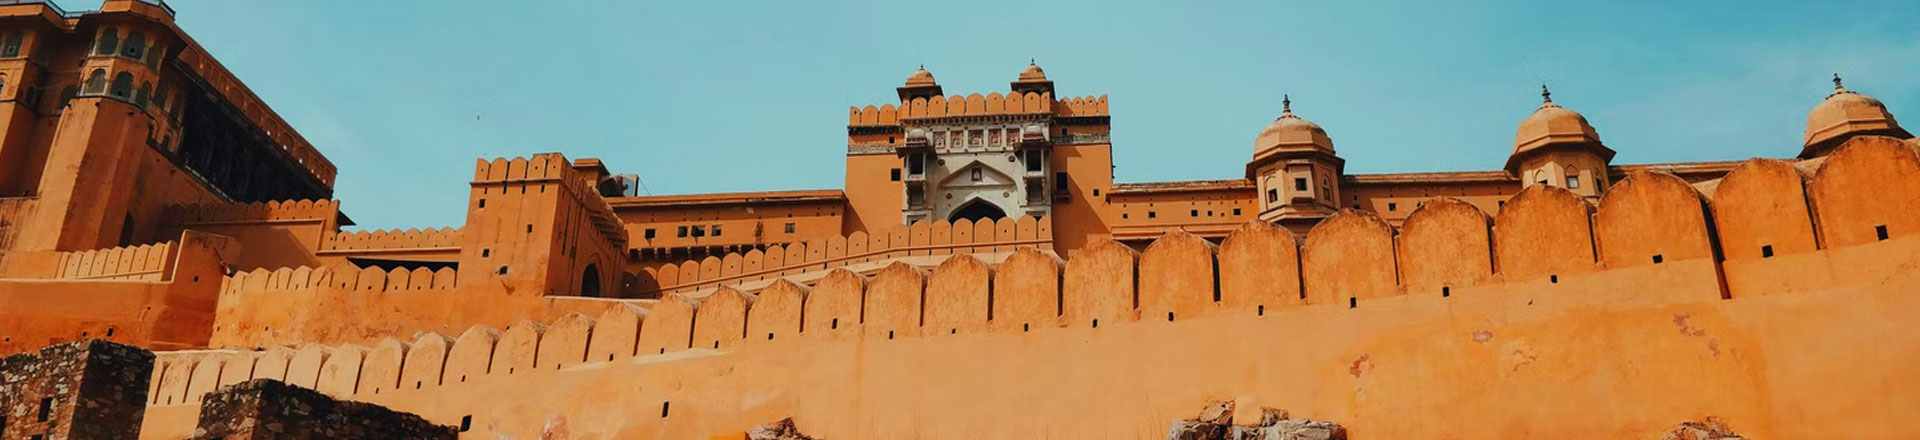 7 Days Delhi Agra Jaipur Ajmer Pushkar Tour